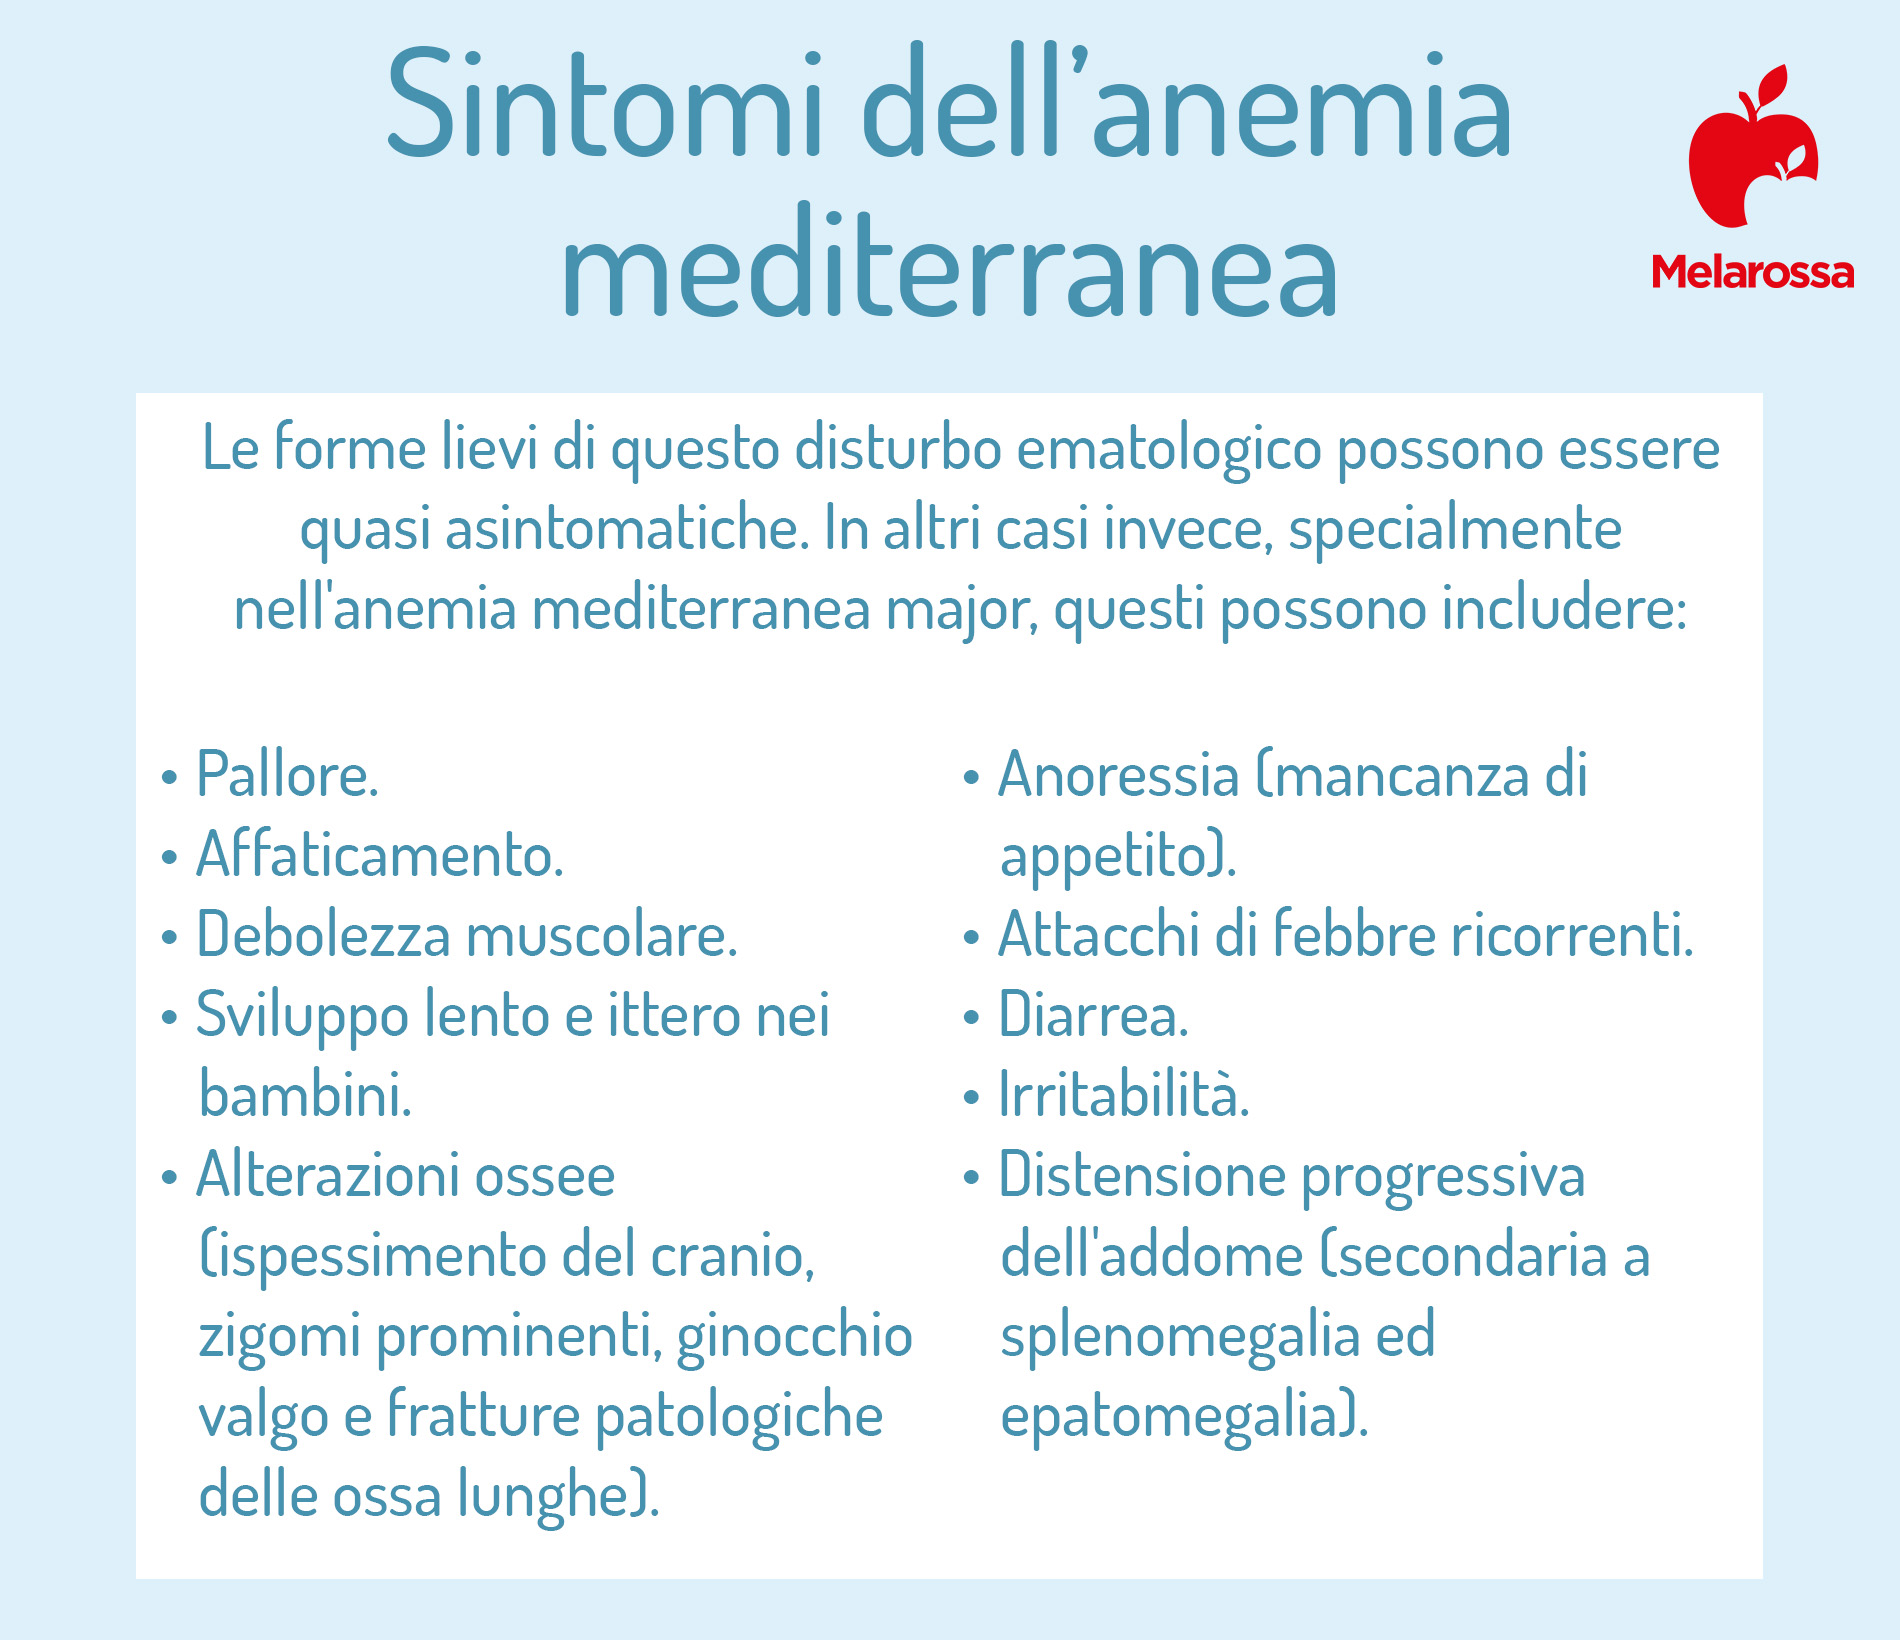 quali sono i sintomi dell'anemia mediterranea